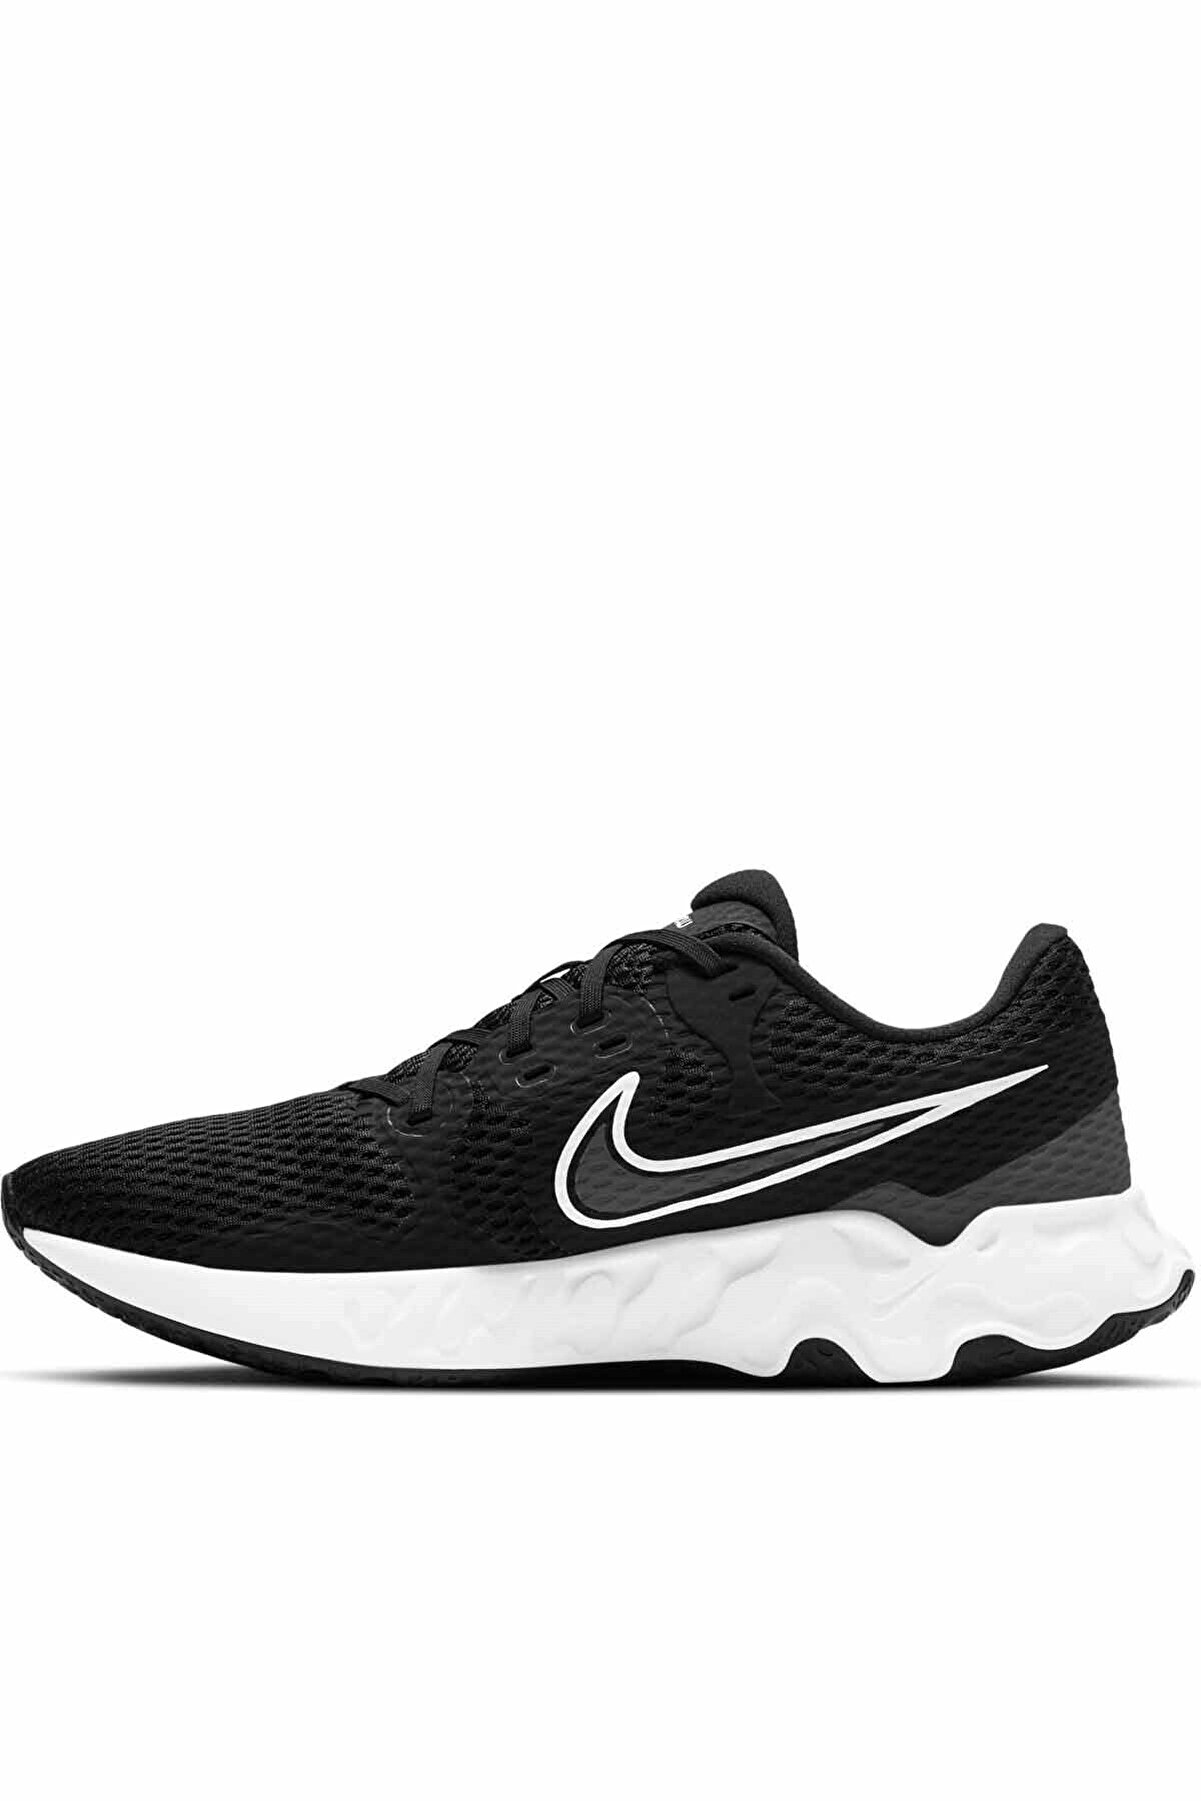 Nike Renew Ride 2 Erkek Yürüyüş Koşu Ayakkabı Cu3507-004-siyah